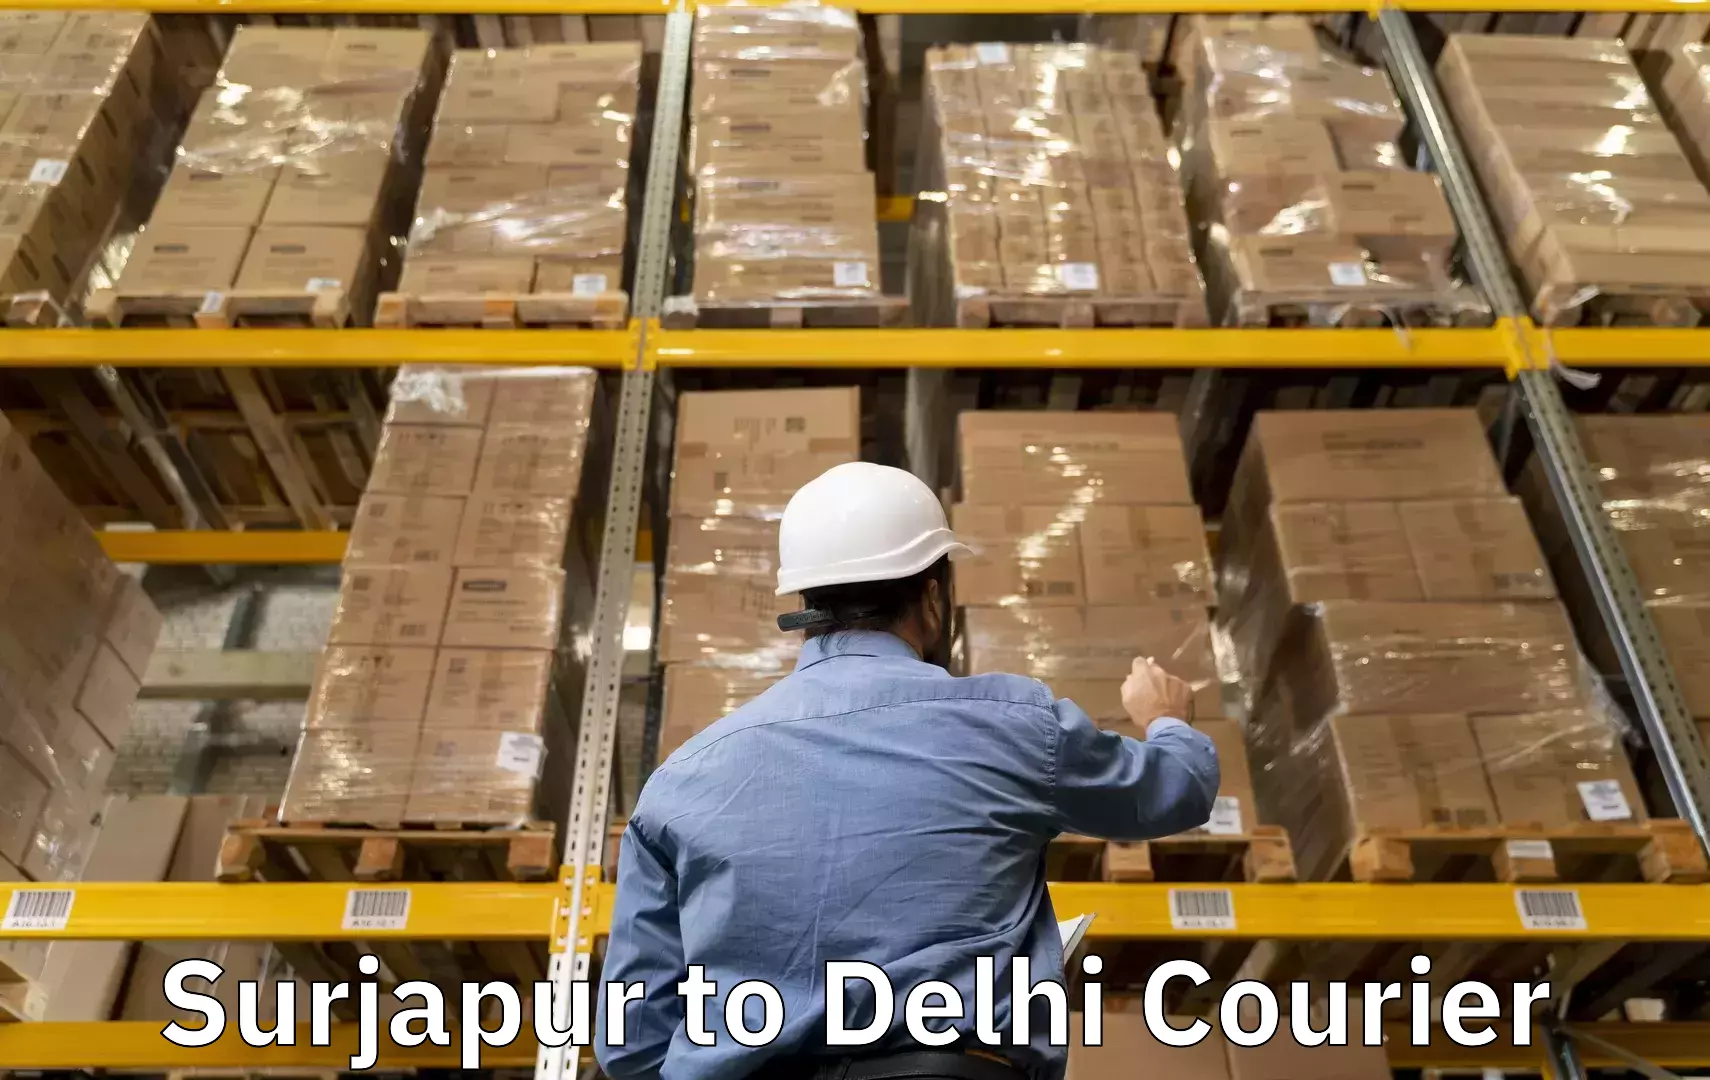 Suburban luggage delivery Surjapur to Jamia Hamdard New Delhi